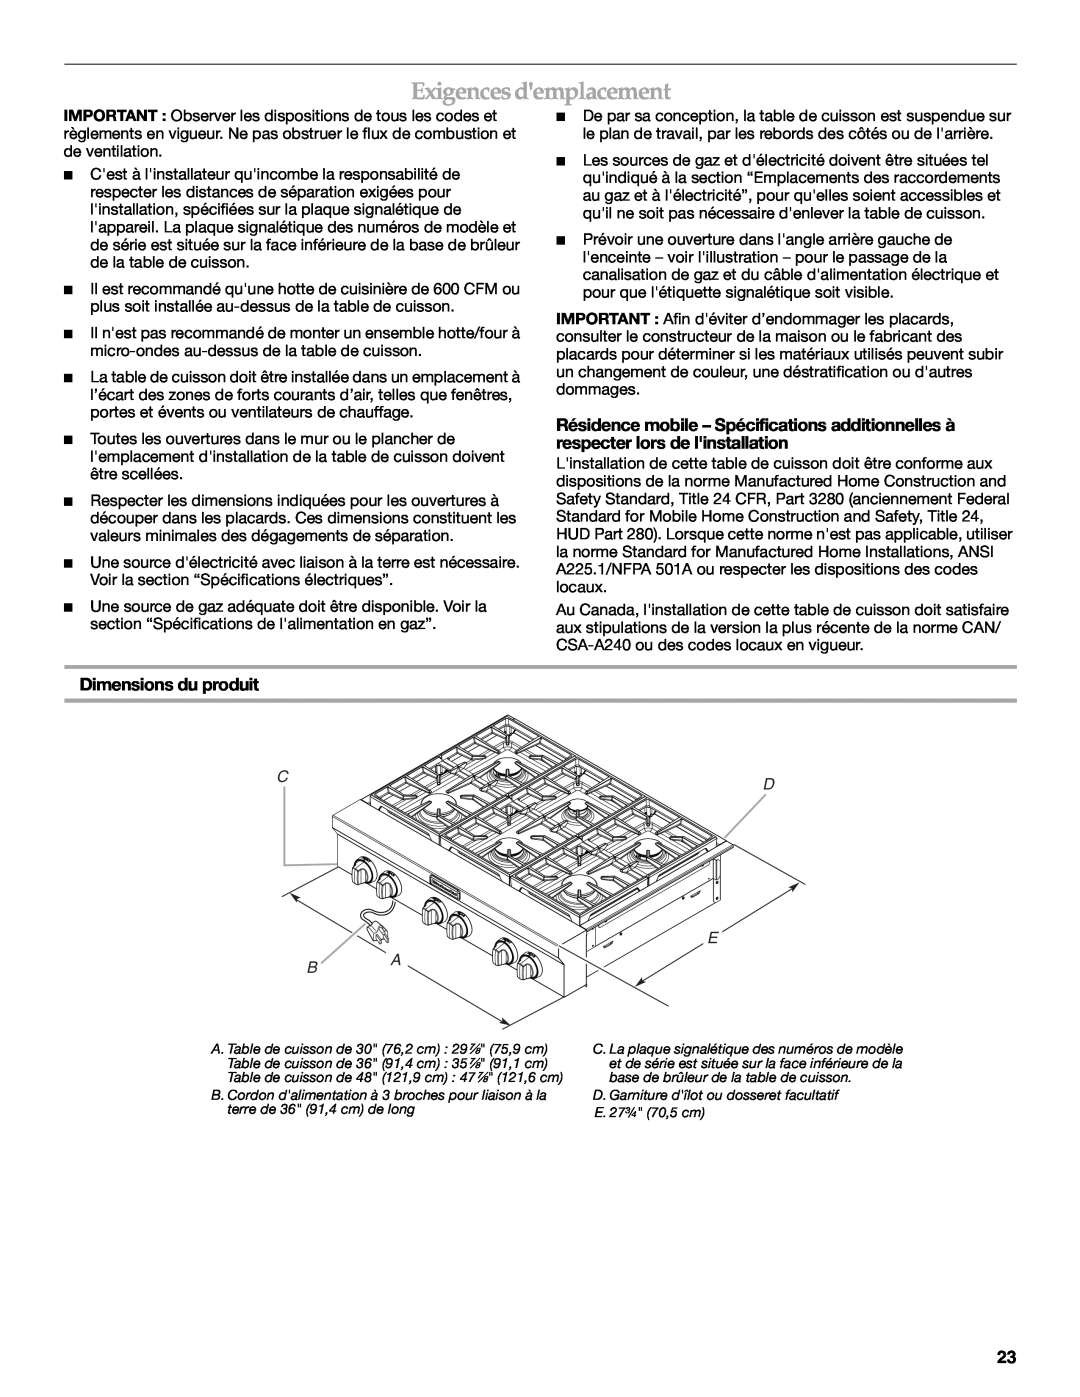 KitchenAid W10271686C installation instructions Exigences demplacement, Dimensions du produit, Cd E B A 